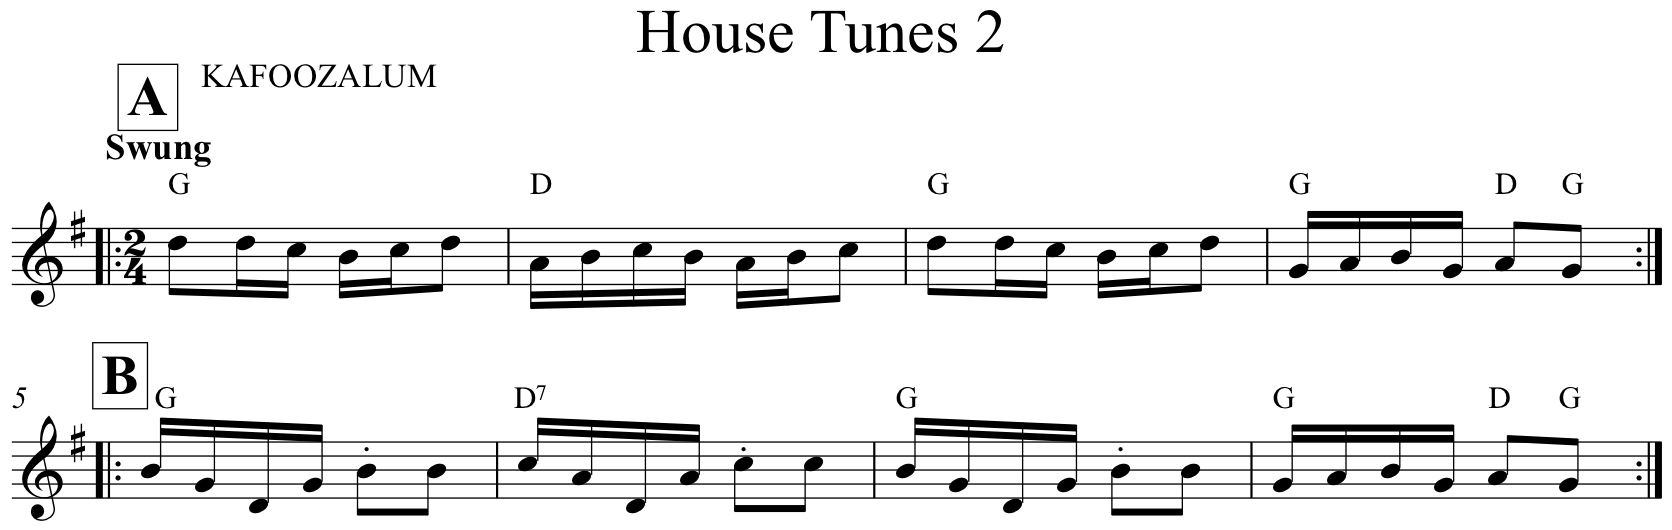 House Tunes 2